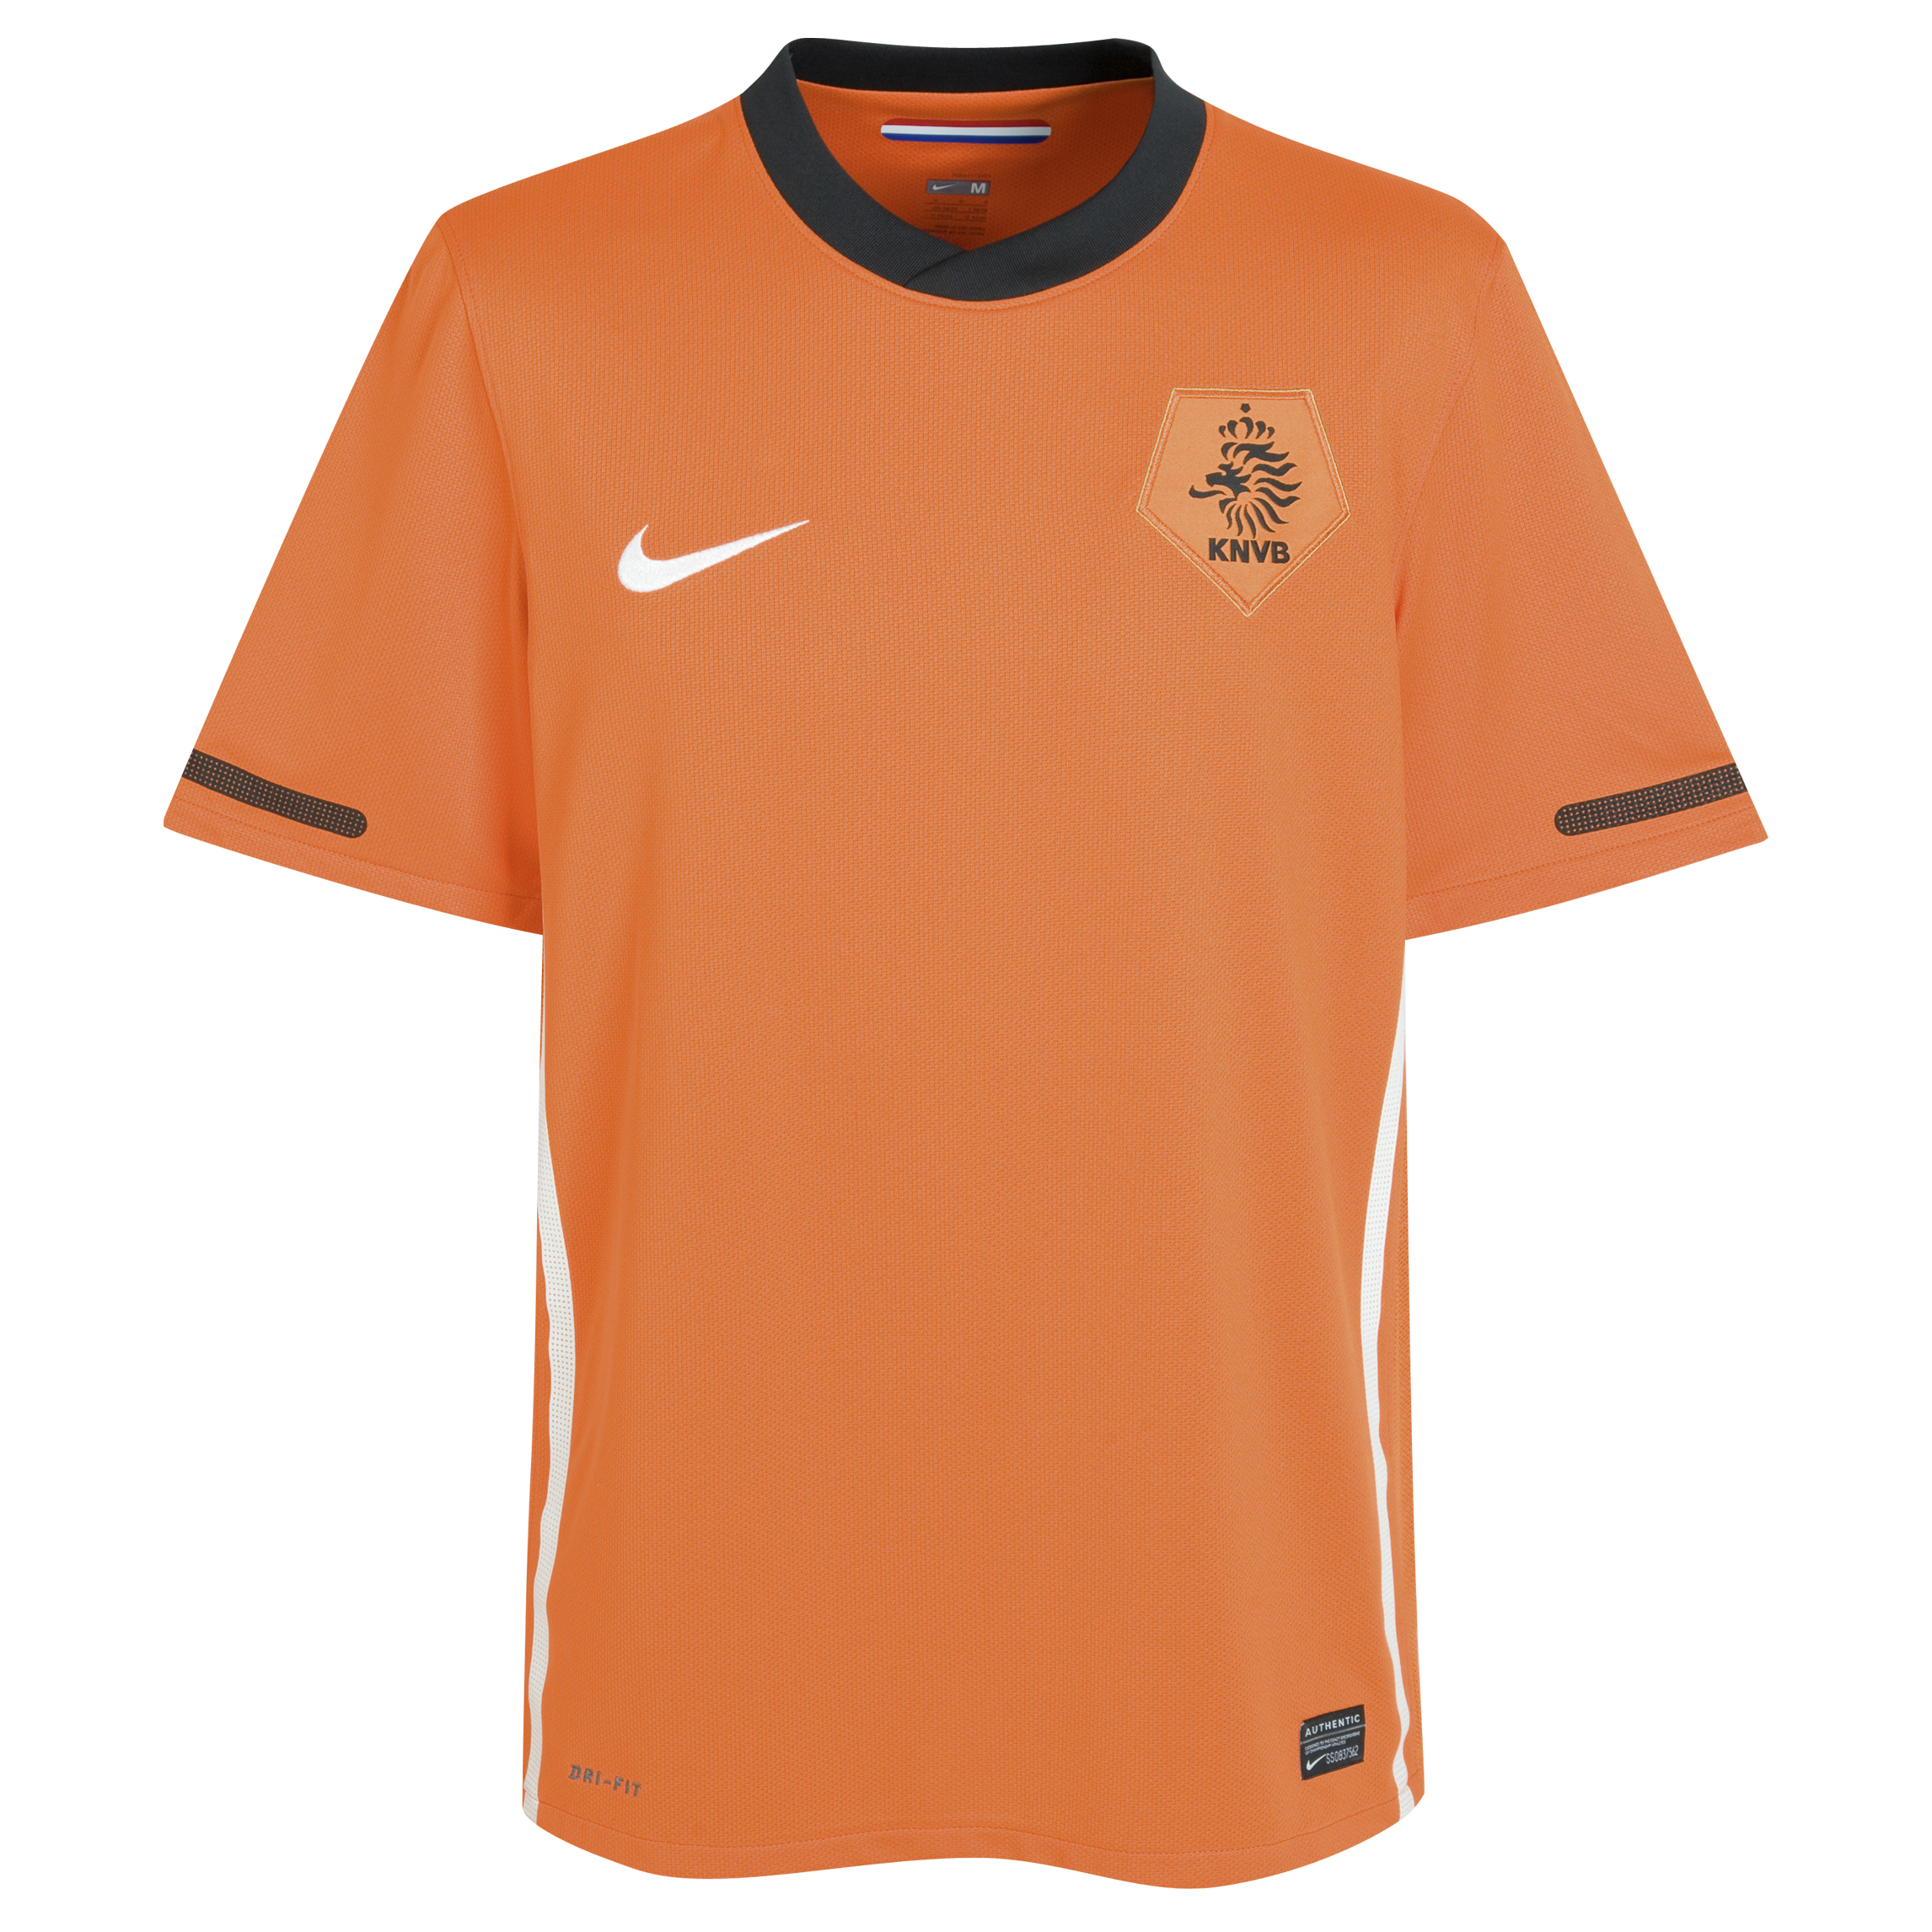 الملابس النهائيه لكأس العالم (2010)بجنوب افريقيا Kb-69604